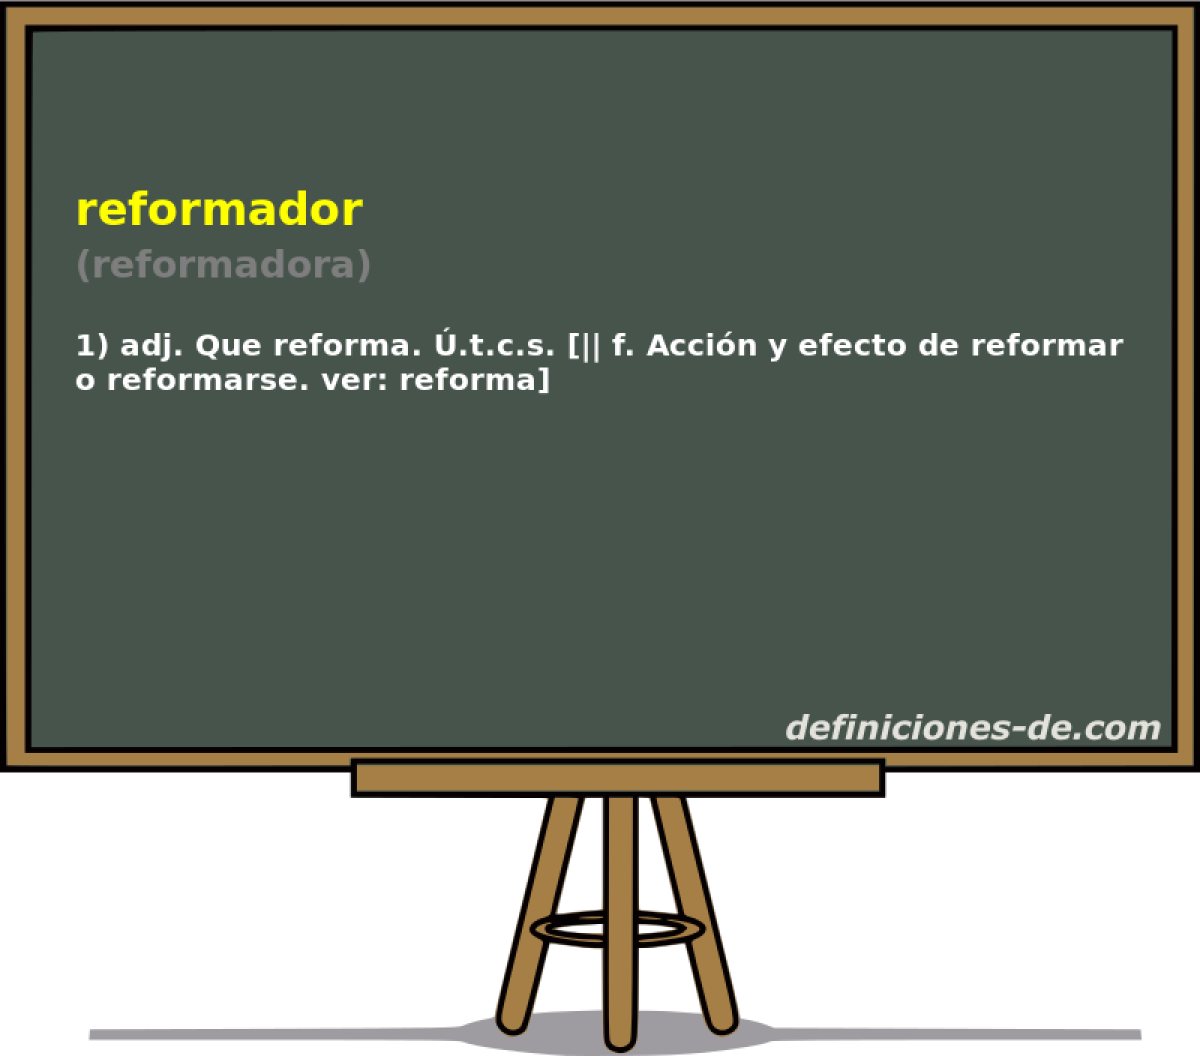 reformador (reformadora)